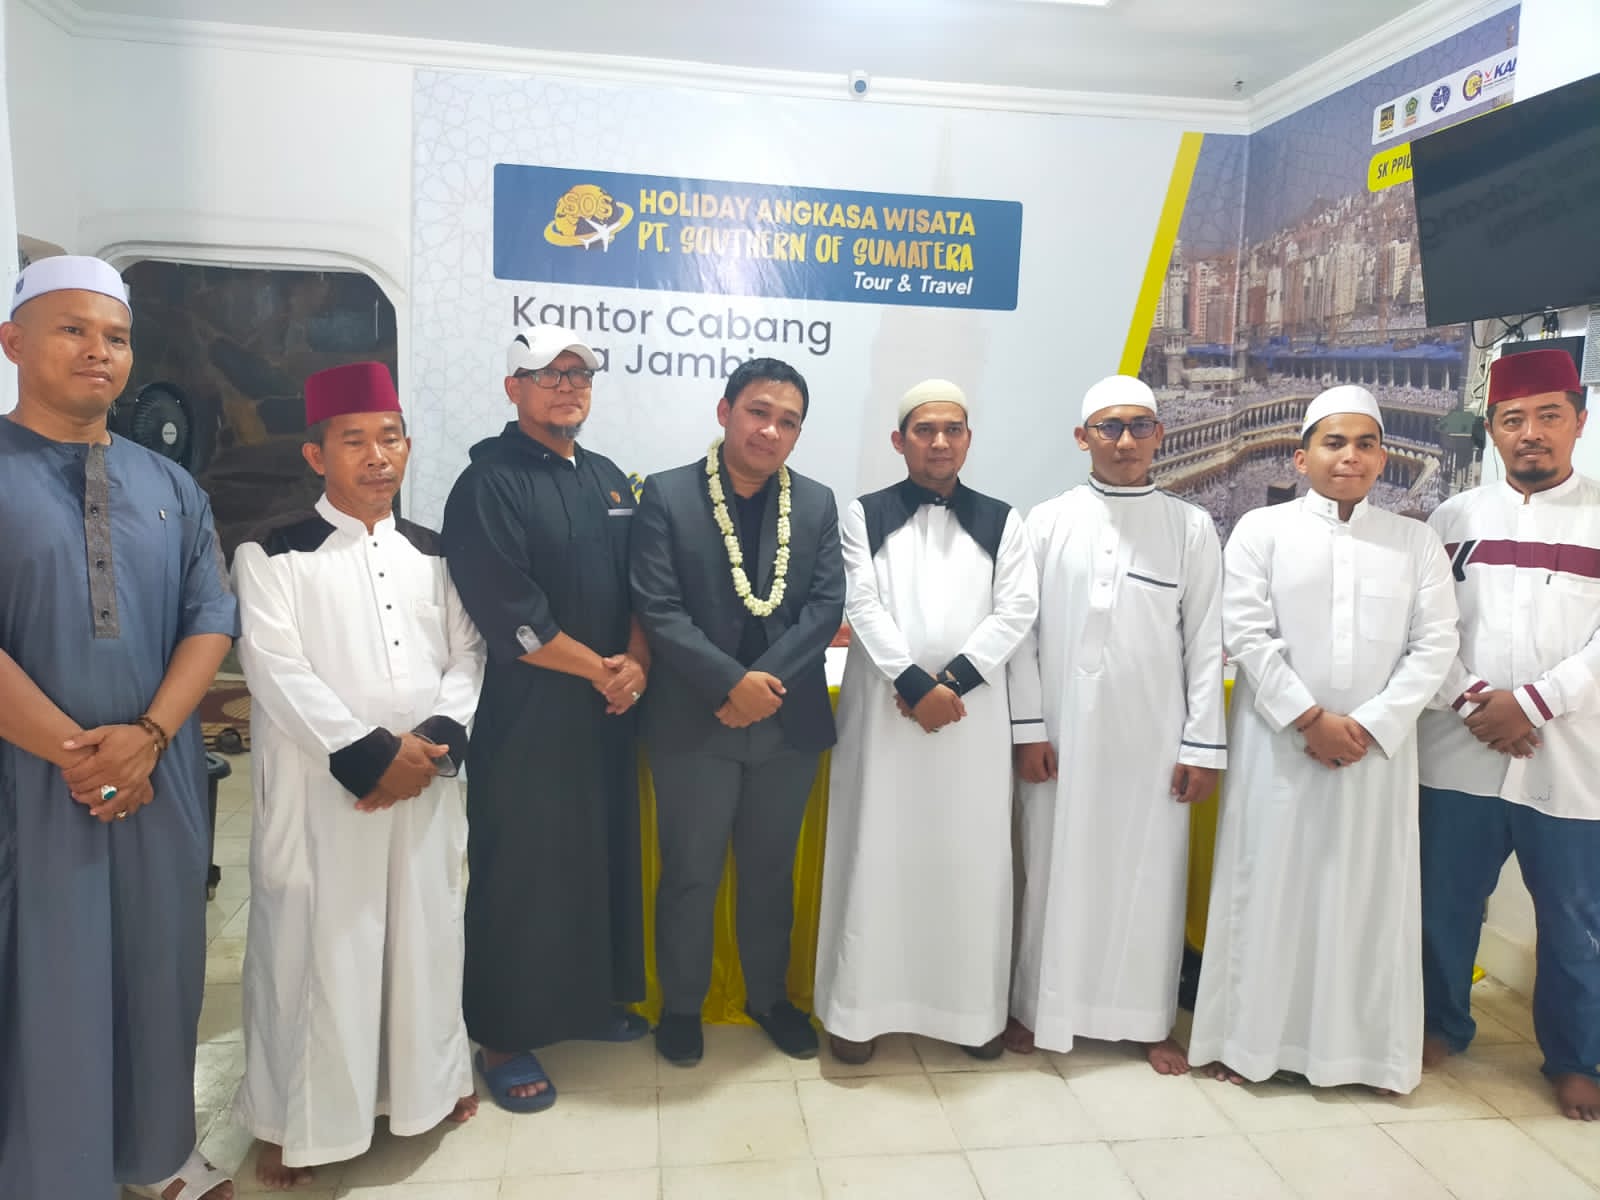 Holiday Angkasa Wisata Cabang Jambi hadir Untuk Kemudahan Jamaah Beribadah Umroh